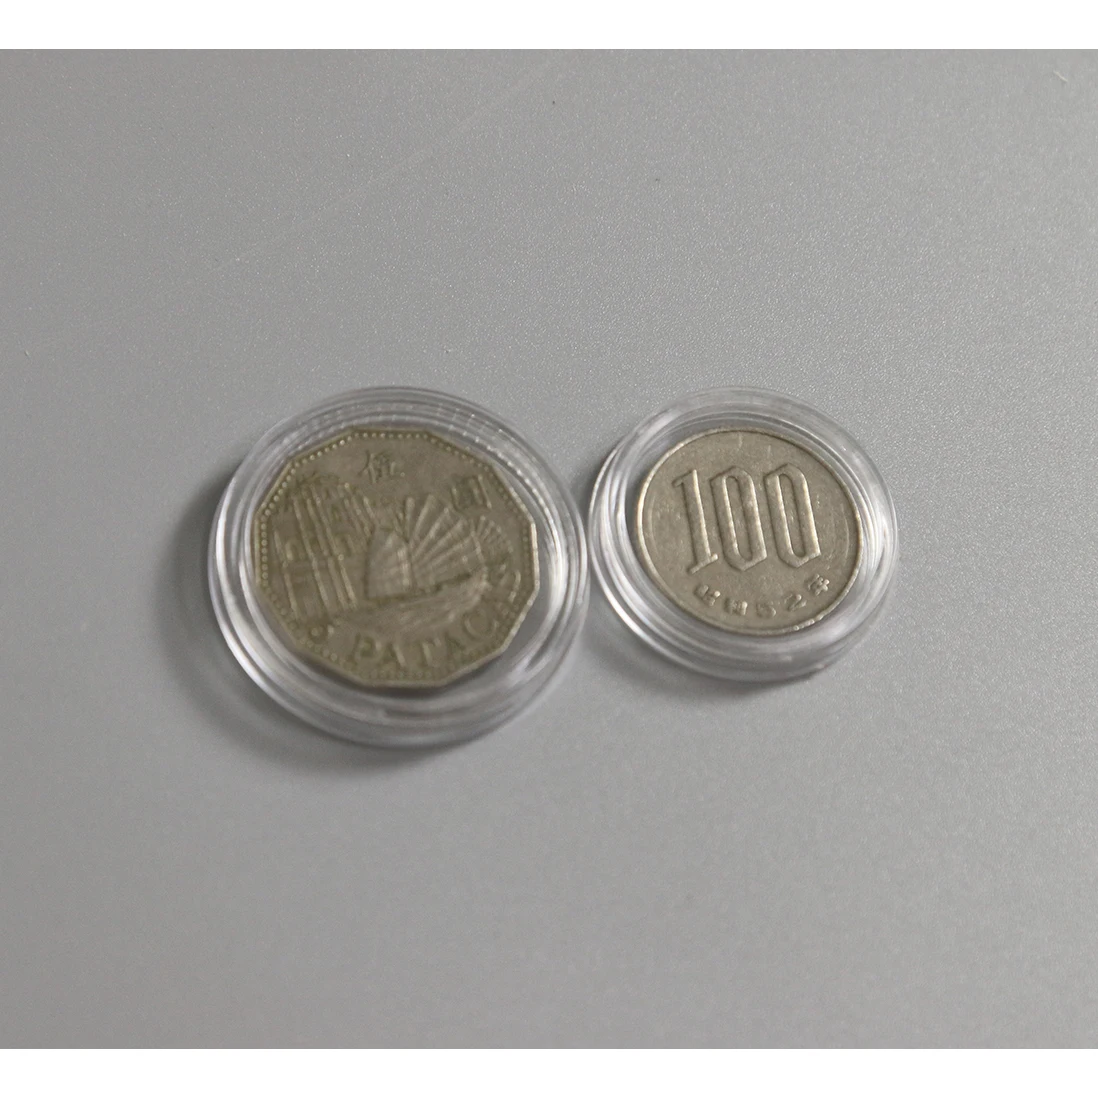 Cajas de Monedas de Plástico 100 UNIDS Transparente Plástico Cajas de Monedas Redondas Holder Cápsulas Contenedor para 27mm Monedas Conmemorativas Colección de Medallas Caja de Monedas